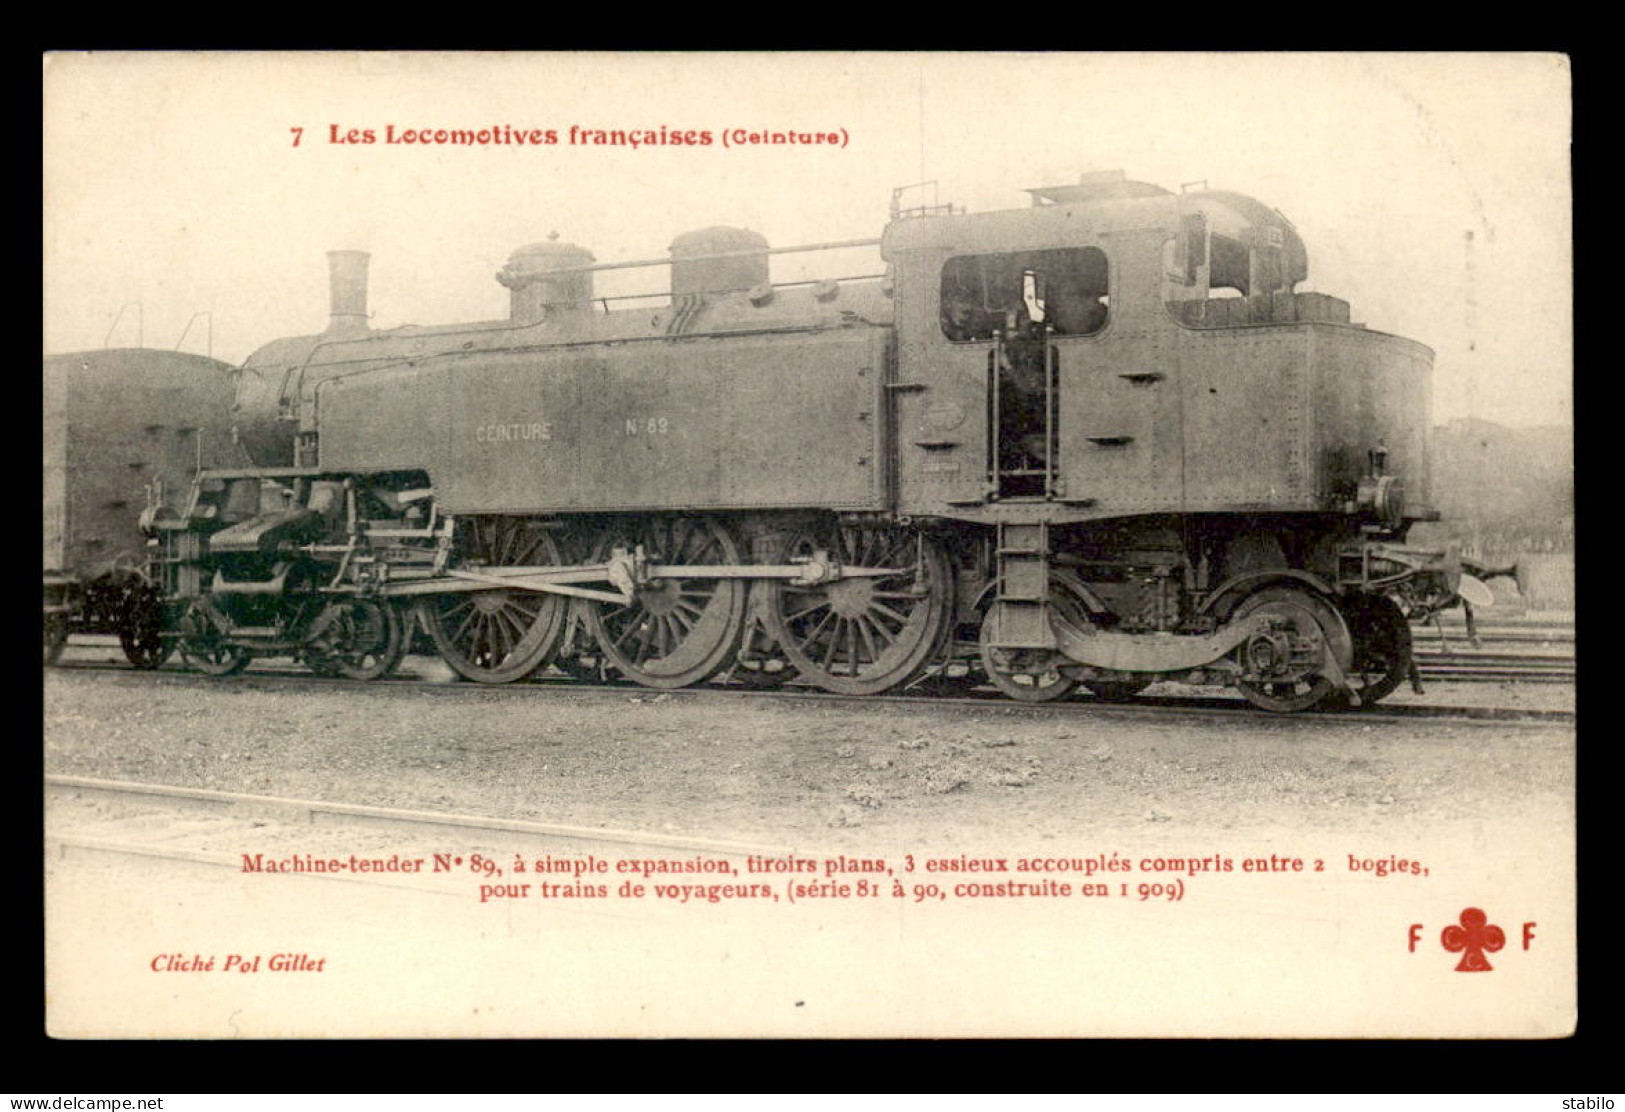 75 - PARIS - "LES LOCOMOTIVES"COLLECTION F. FLEURY - LOCOMOTIVE N°81 DU CHEMIN DE FER DE CEINTURE - Pariser Métro, Bahnhöfe